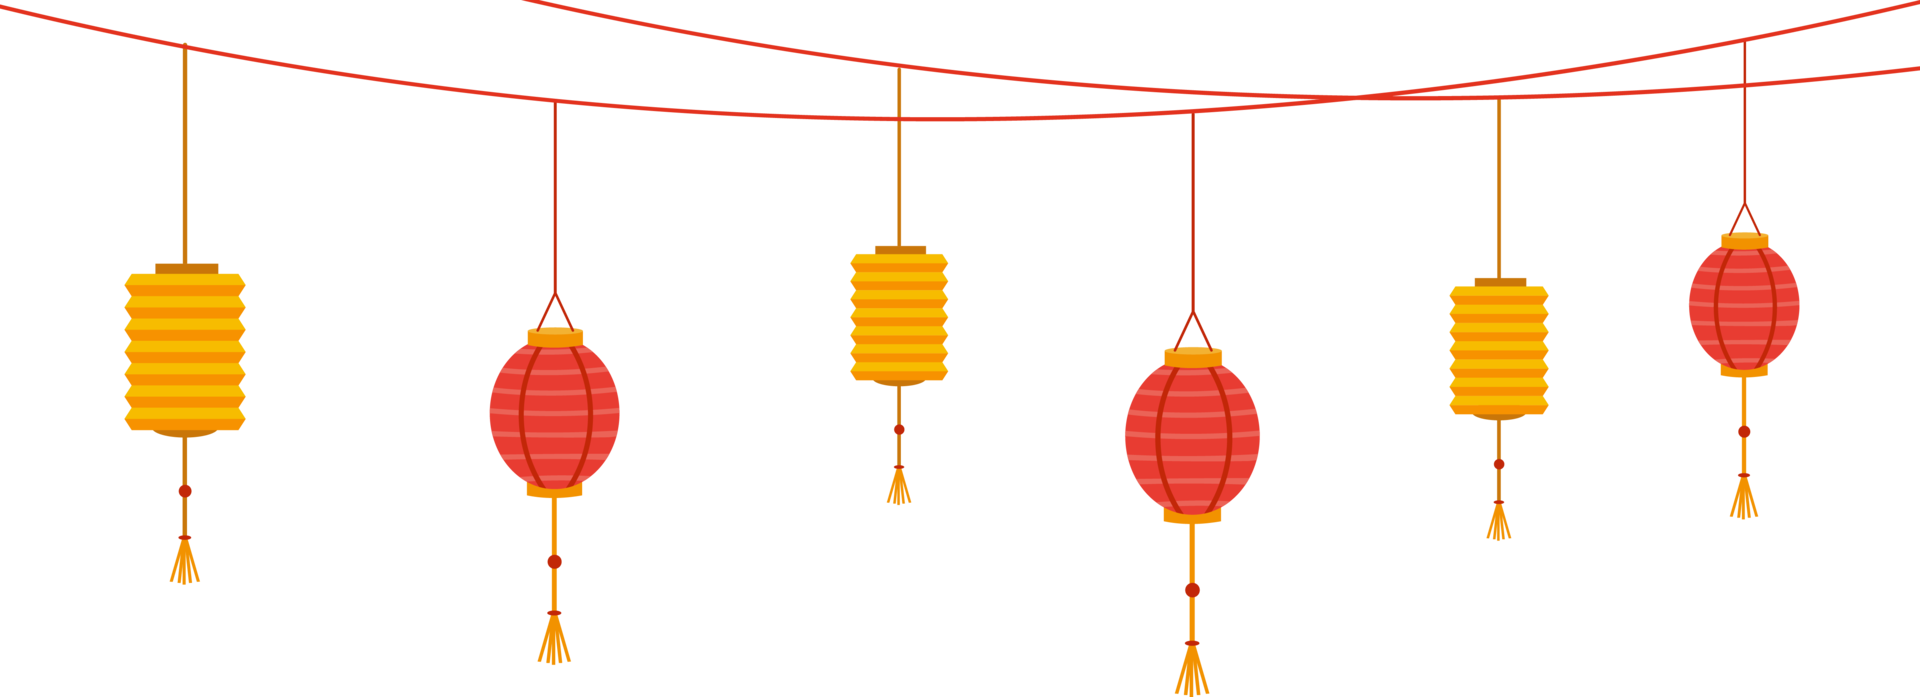 Chinese New Year Hanging Lanterns 15098476 Png